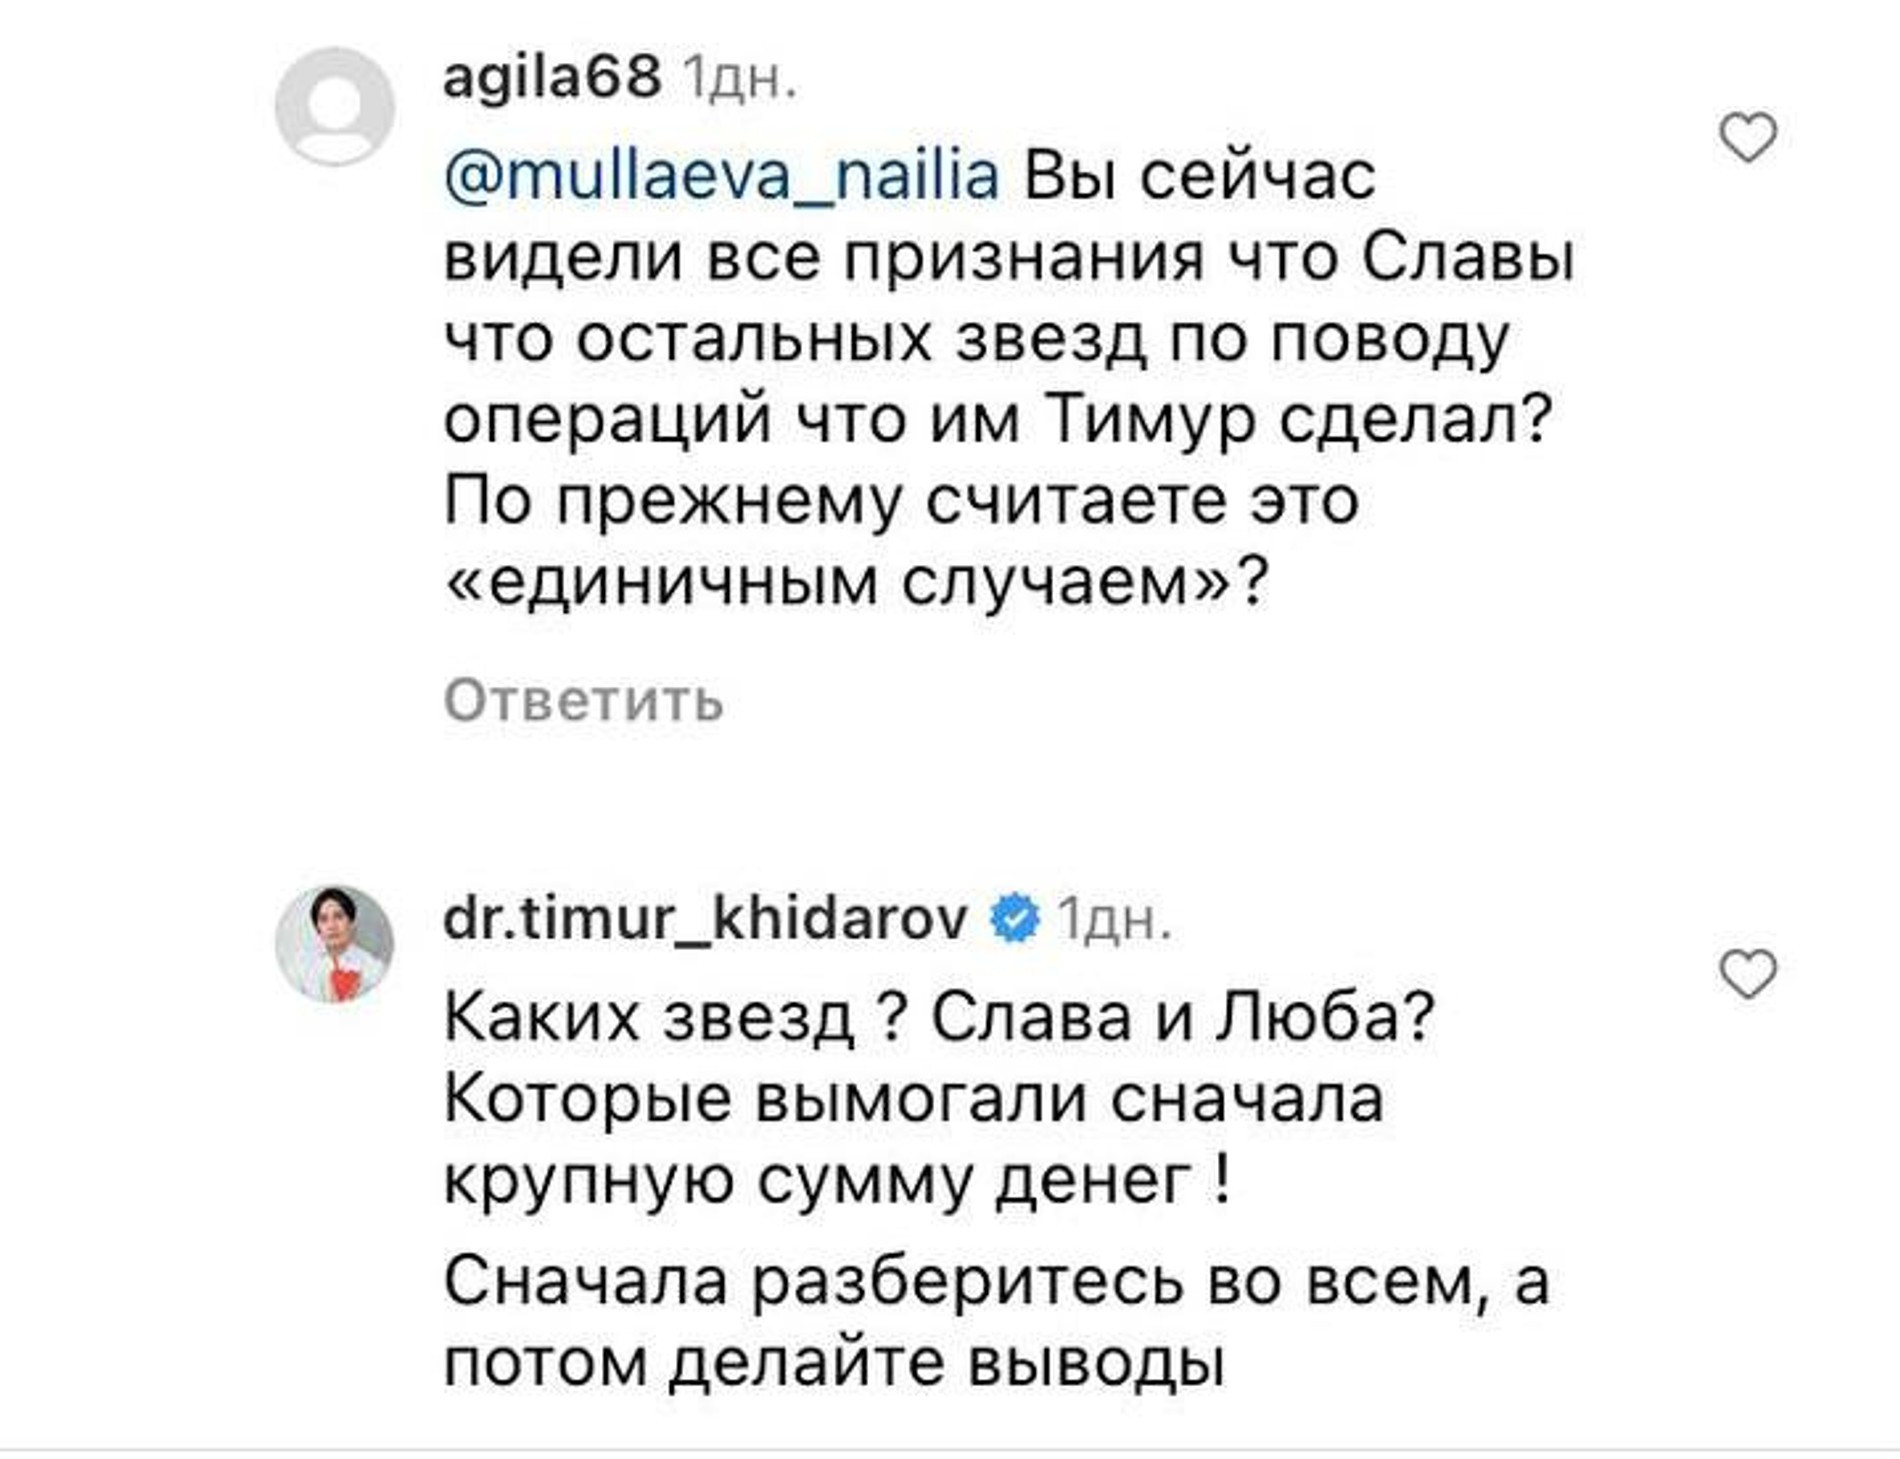 Тимур Хайдаров выдвинул свою версию произошедшего. Скриншот: Инстаграм (запрещен в РФ) @dr.timur_khidarov